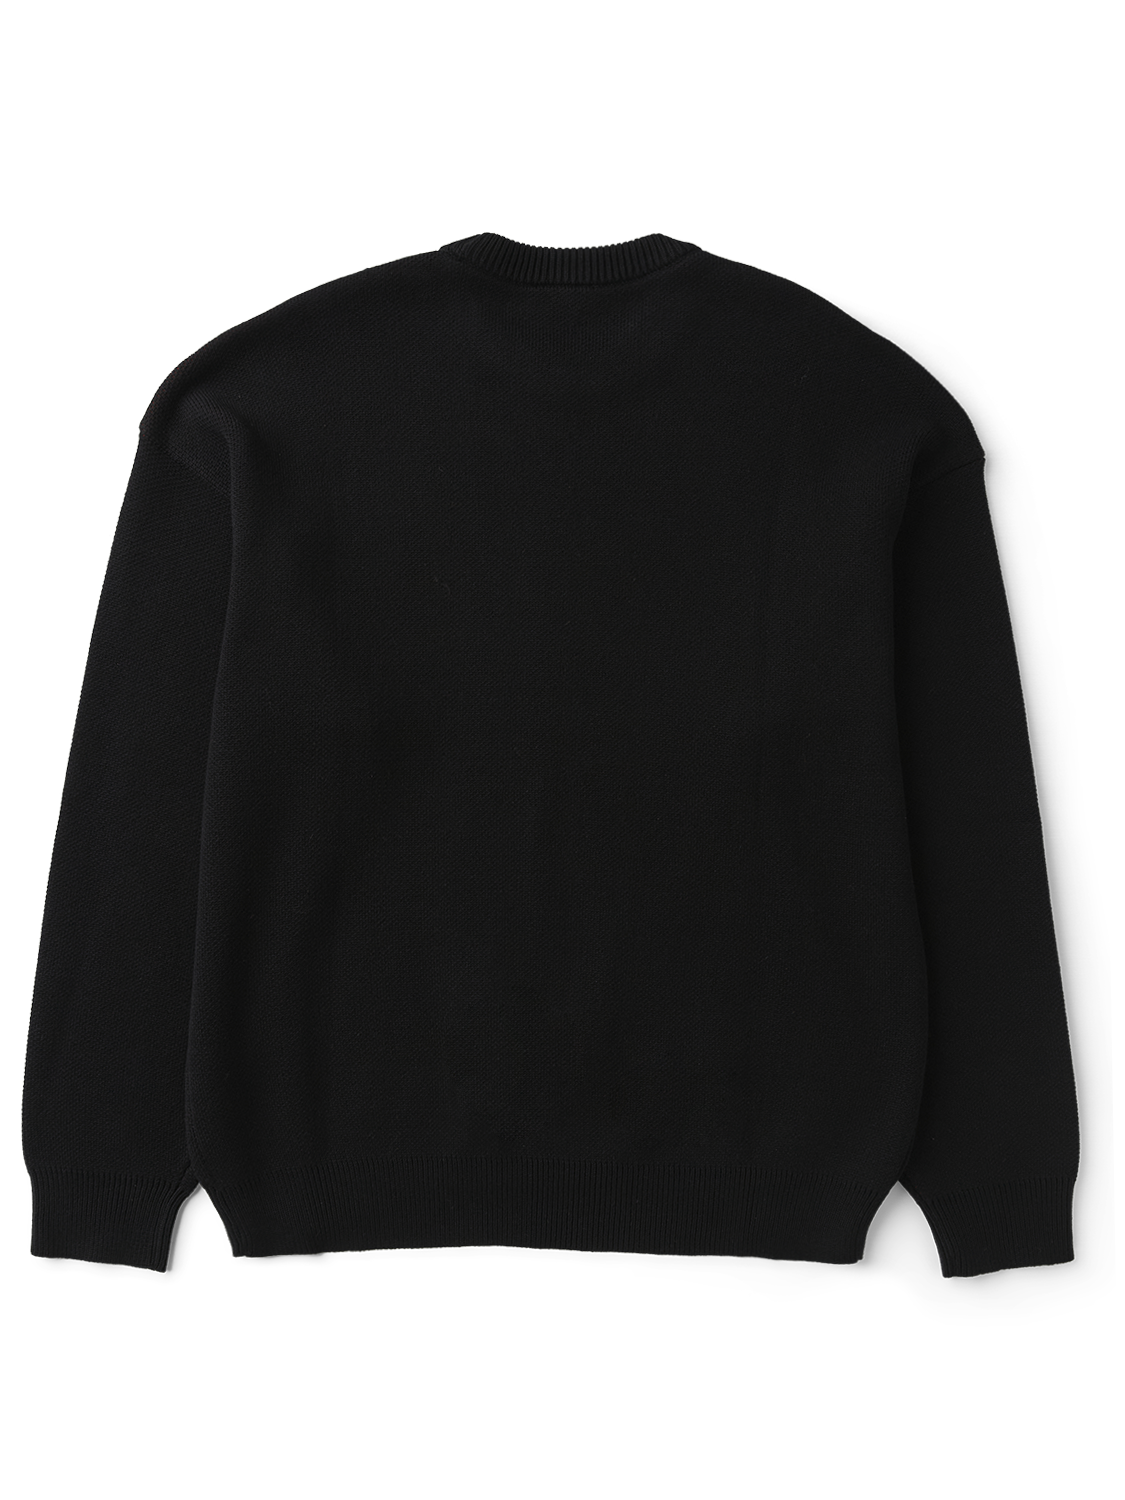 Fang Sweater